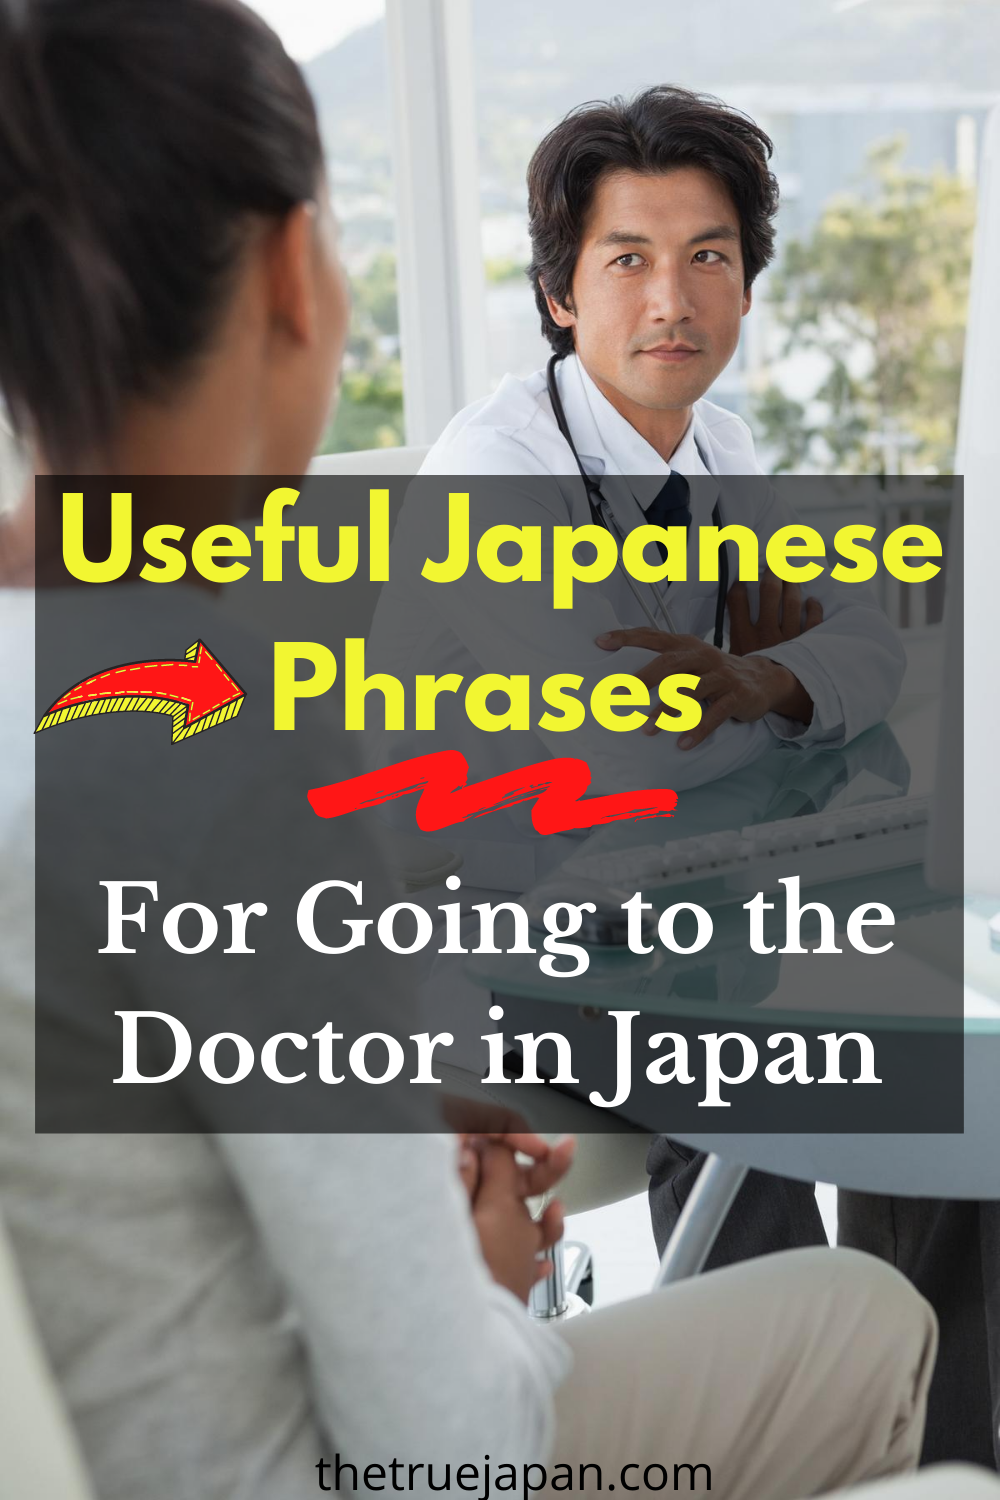 วิธีการพูดว่า “หมอ” ในภาษาญี่ปุ่น – เงื่อนไขทางการแพทย์ที่มีประโยชน์ในการเรียนรู้